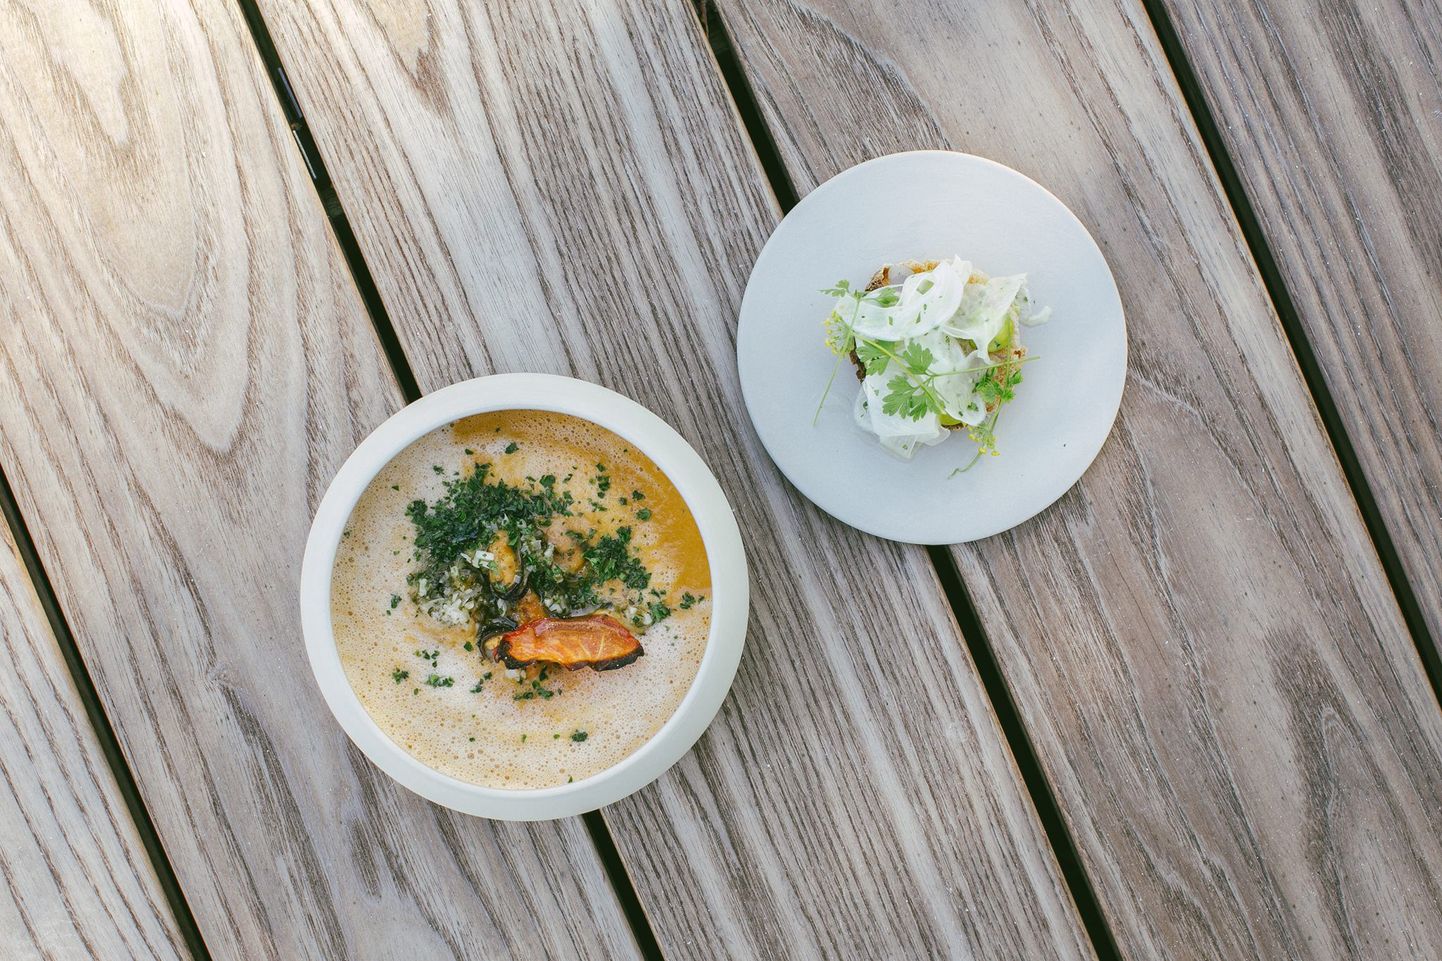 Рыбный суп буйабес и его оригинальная подача. Суп острый, а булочка с зеленью - нежная. Отличное сочетание.